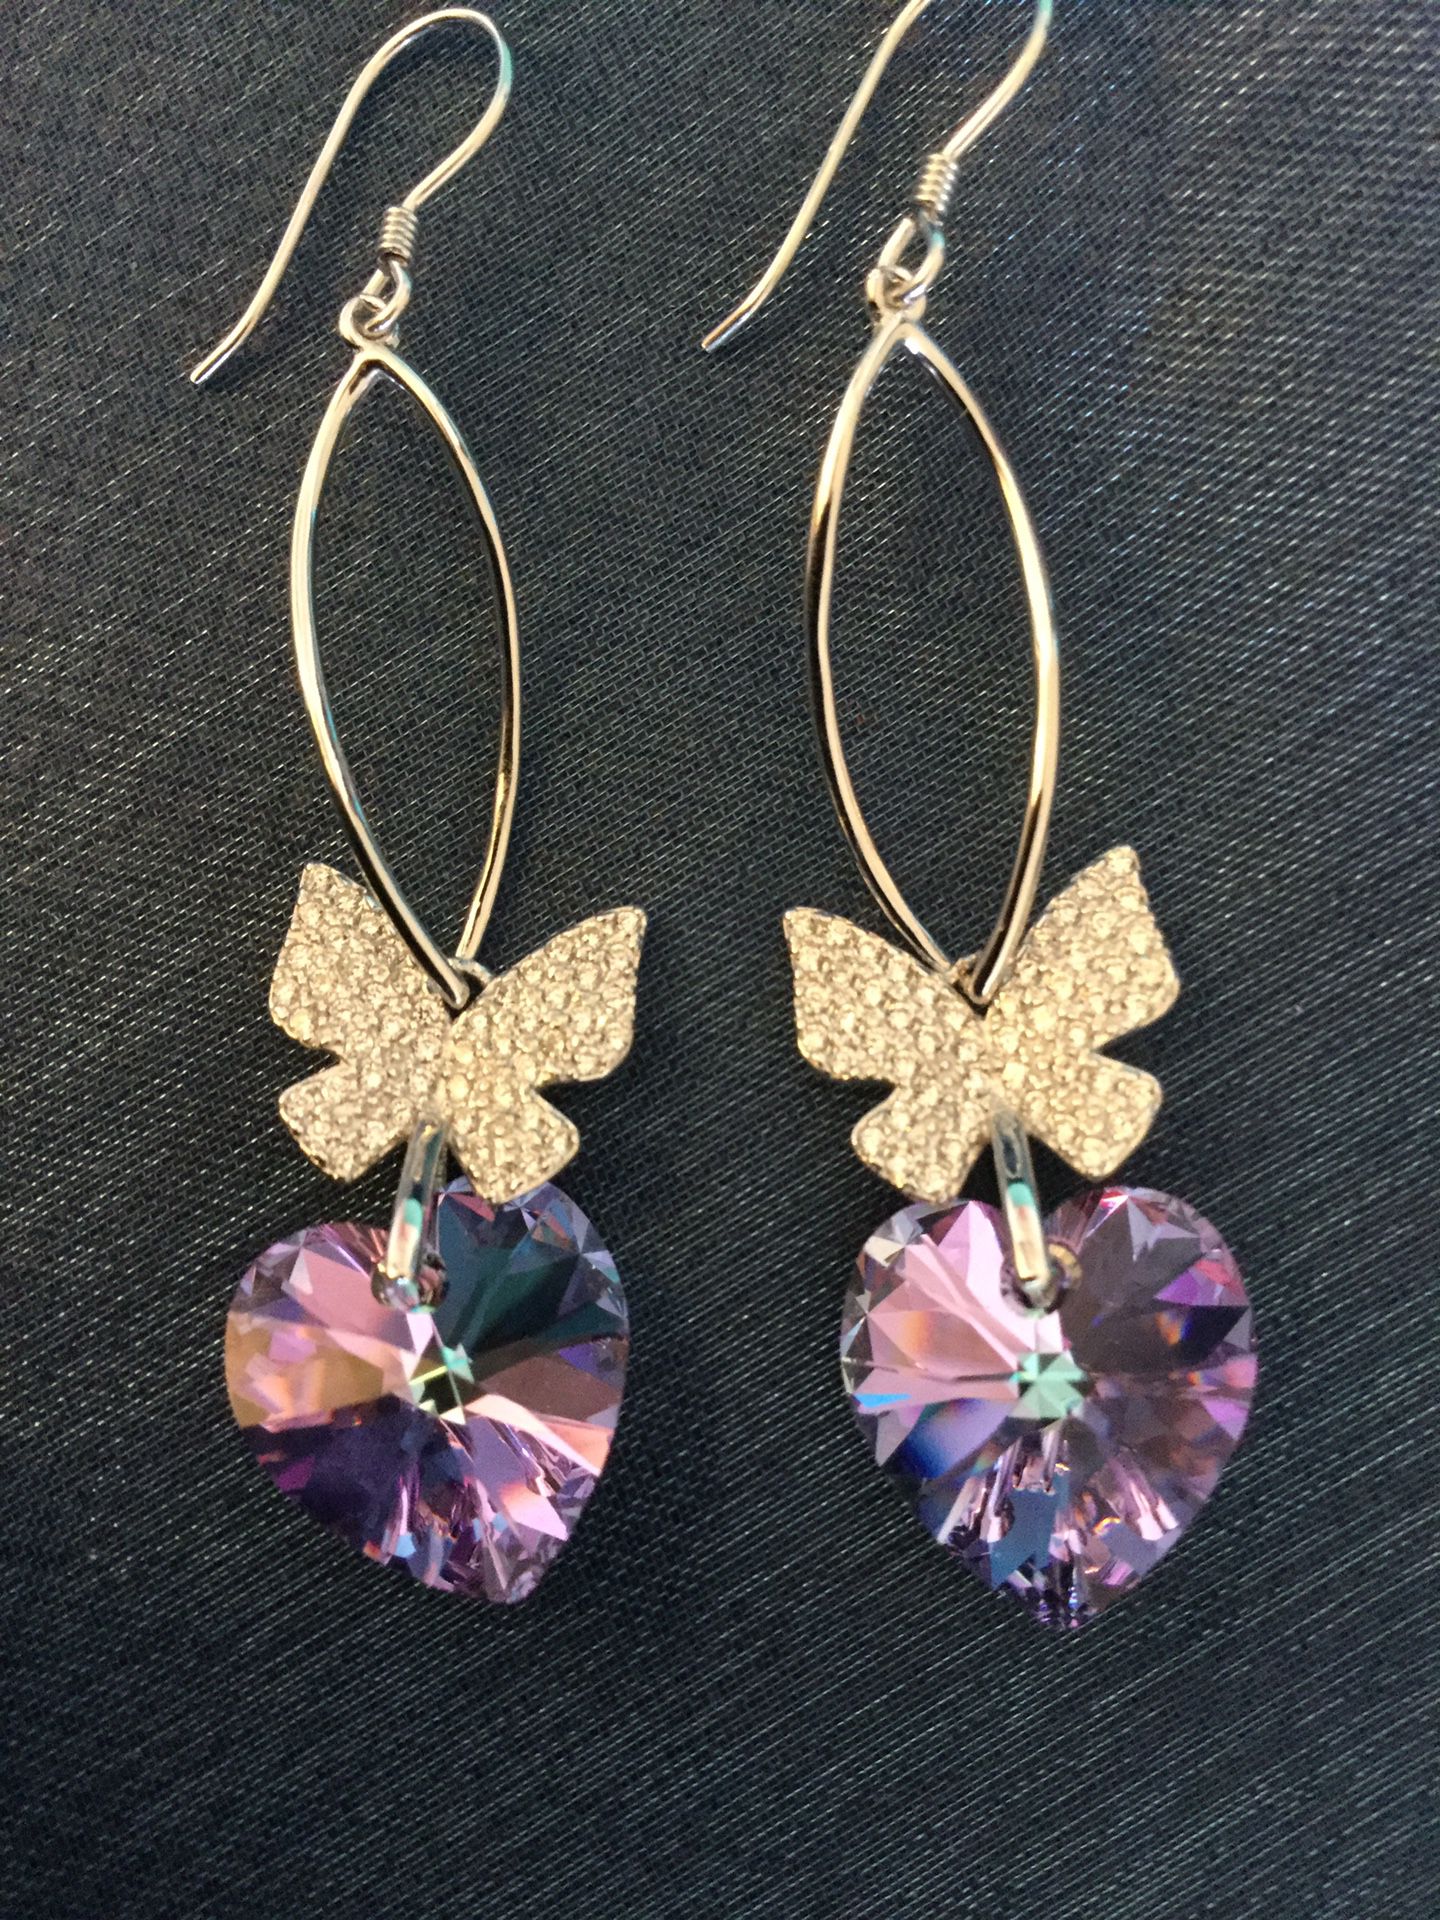 Lovely Sterling Silver Butterly & Amethyst gemstone heart earrings 🦋 Swarovski Crystal Hearts purple gemstone 💜 🦋 💜